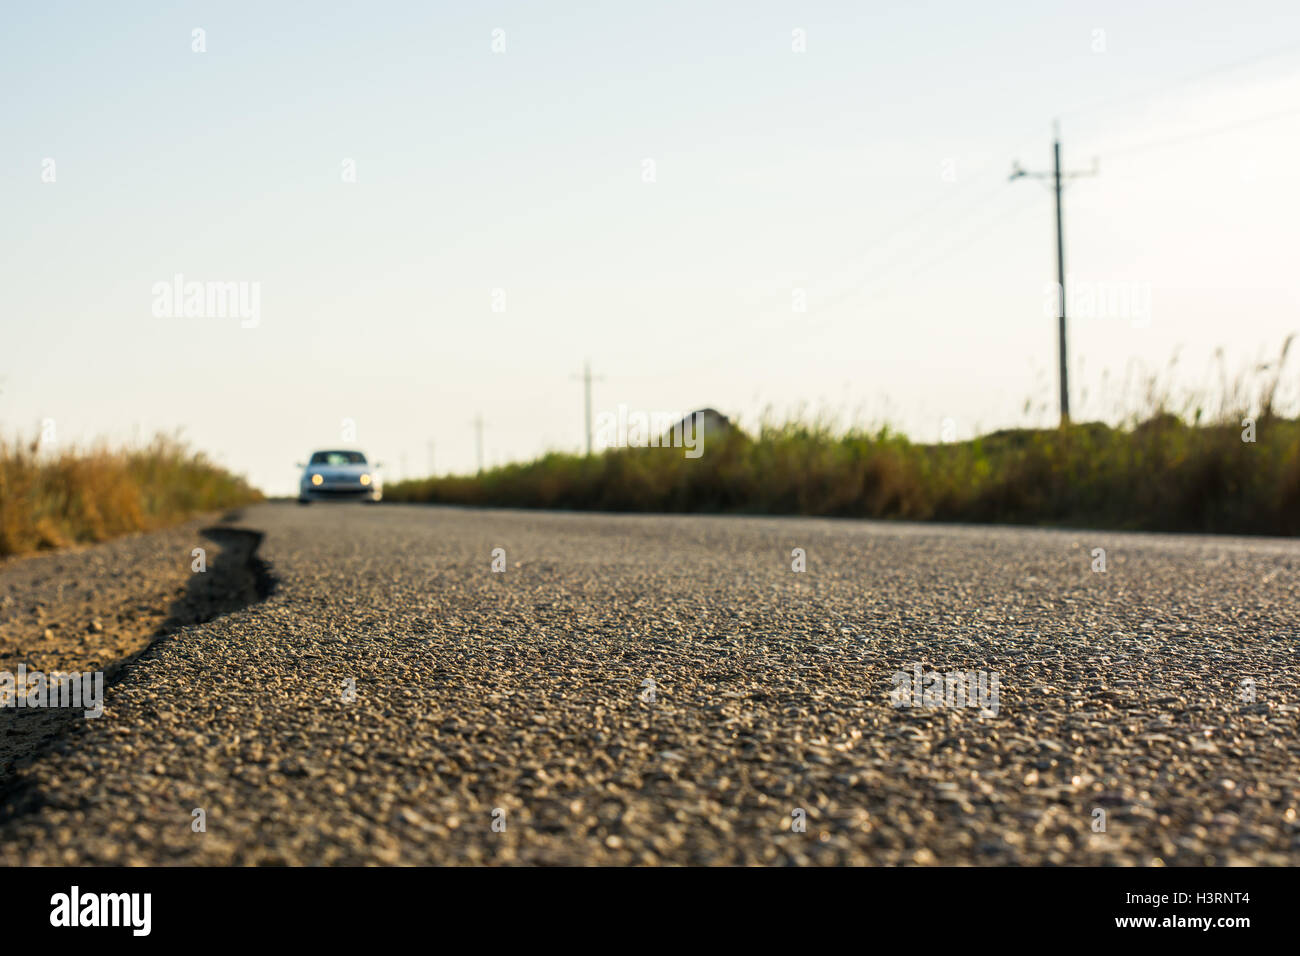 Dettaglio dell'asfalto di una strada di campagna mentre un auto l'aproaches. Foto Stock